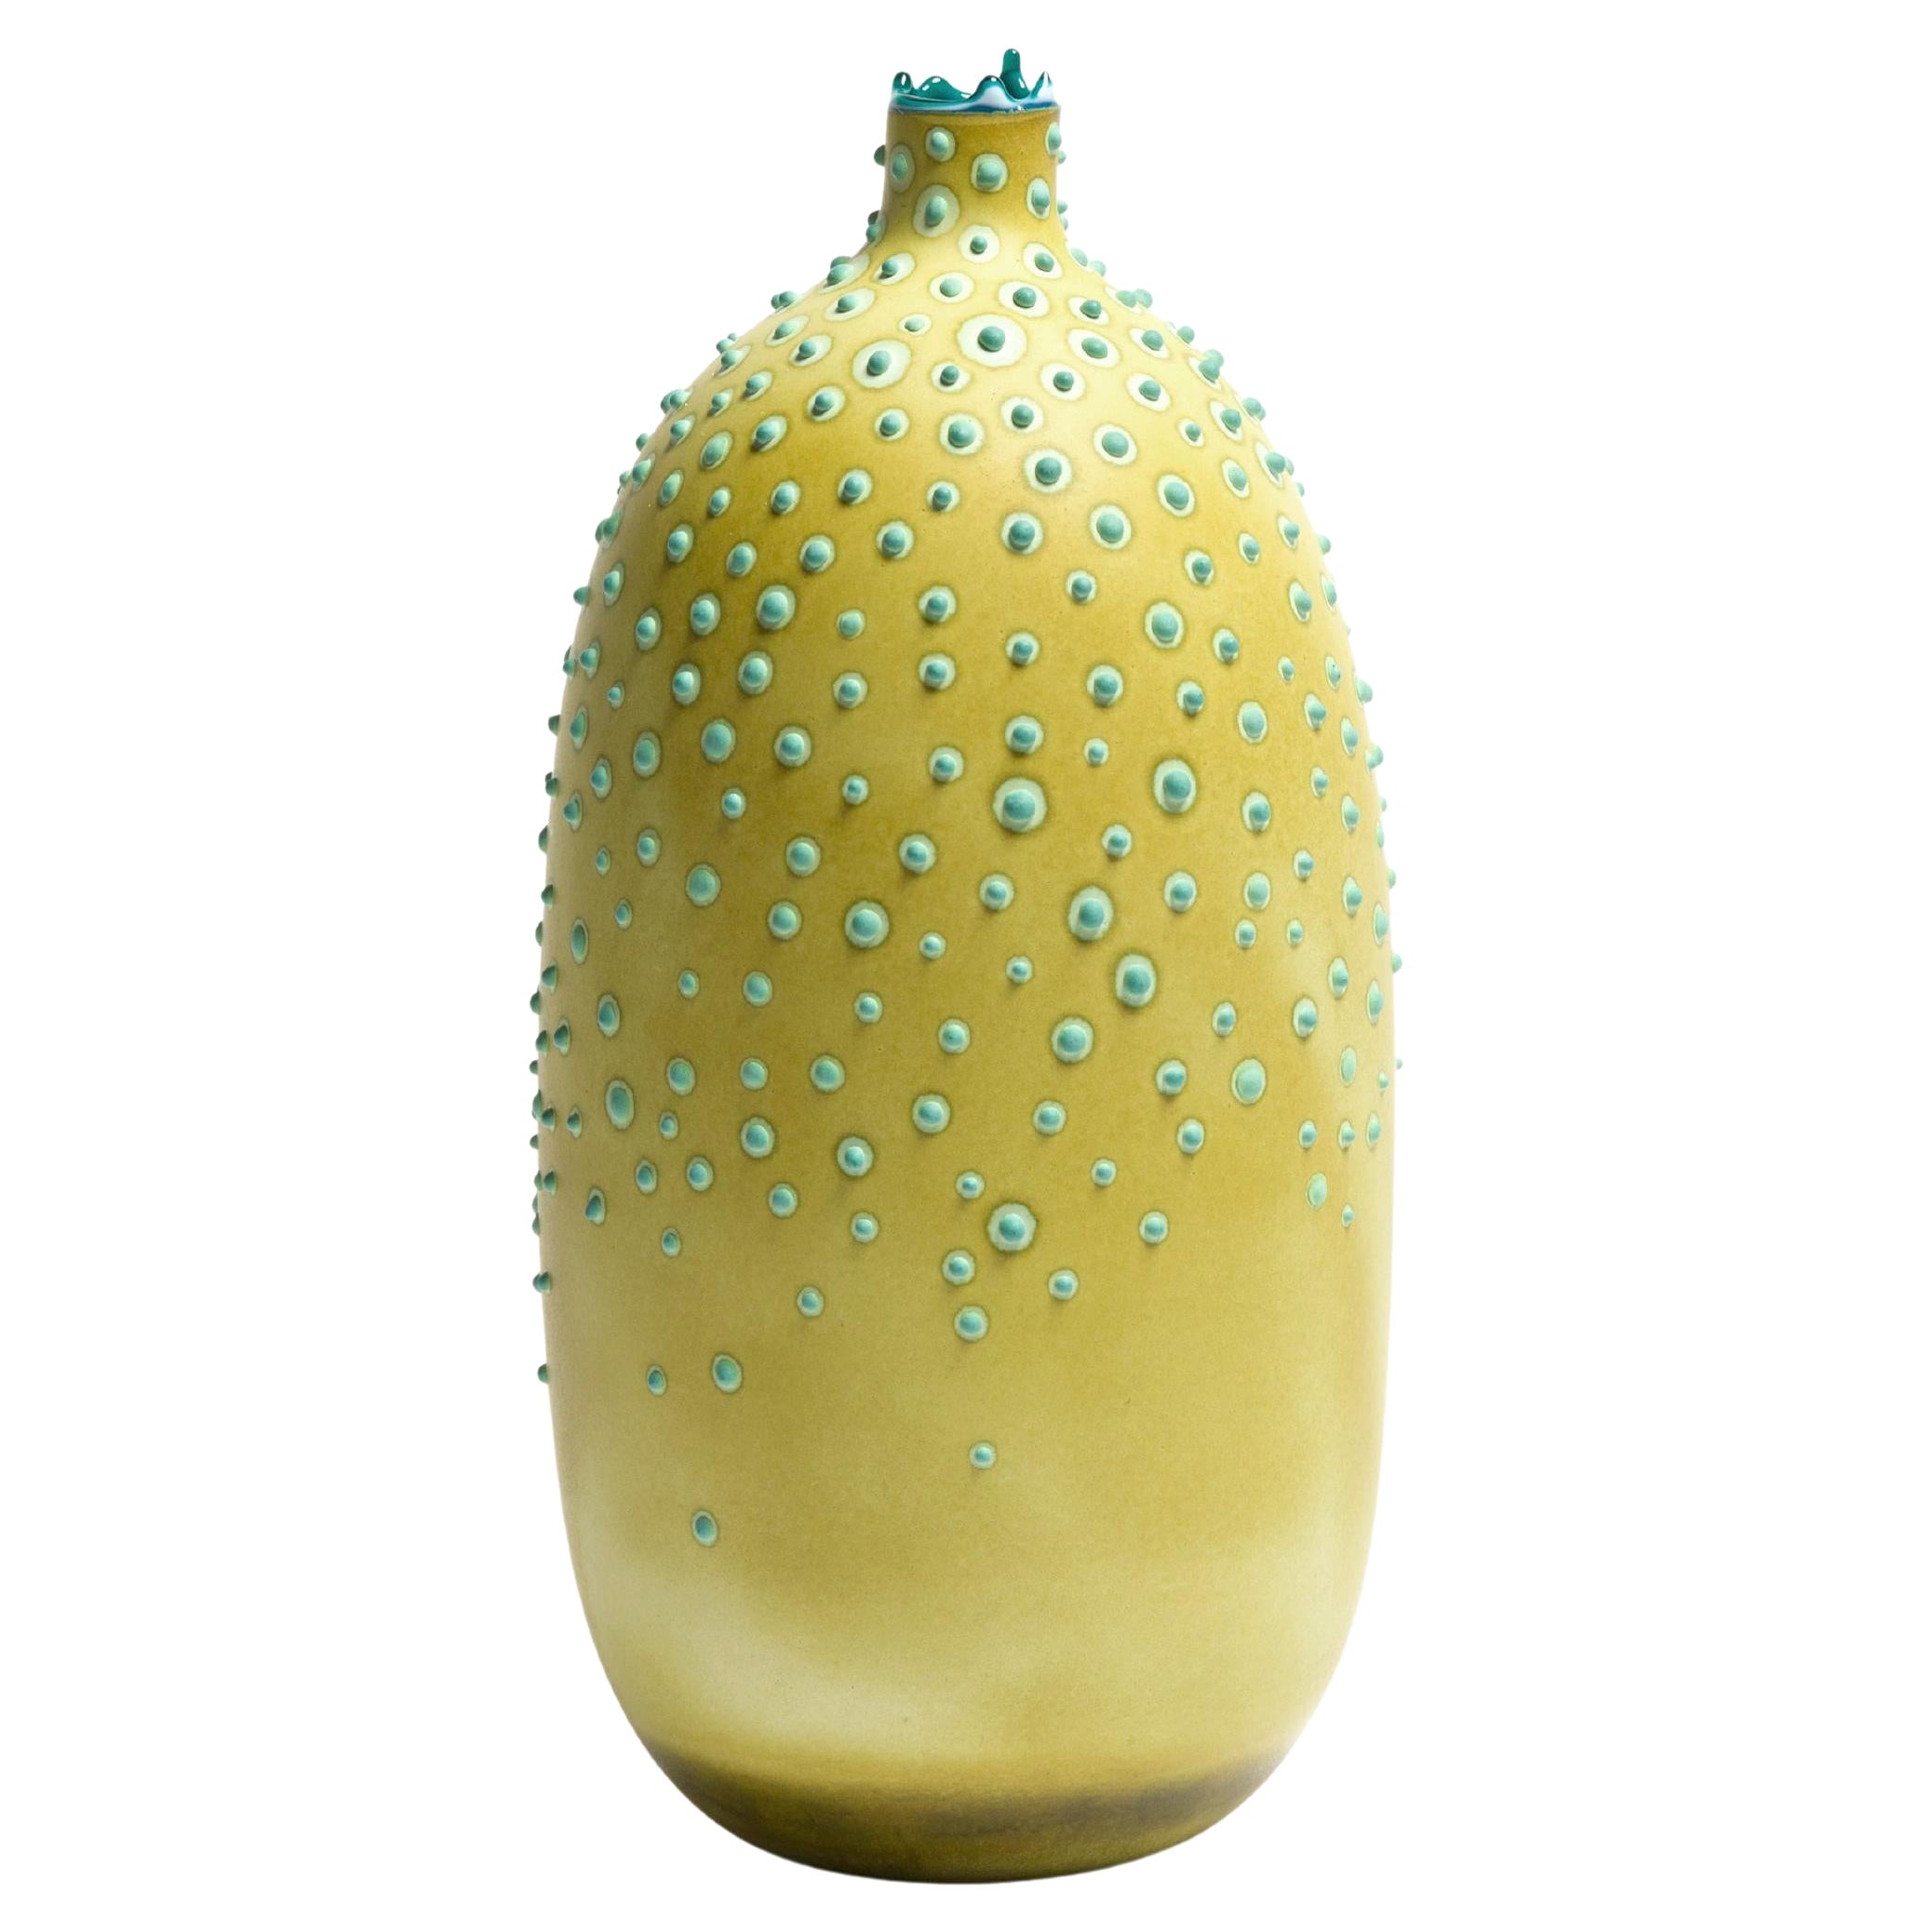 Lichen Huxley Vase by Elyse Graham